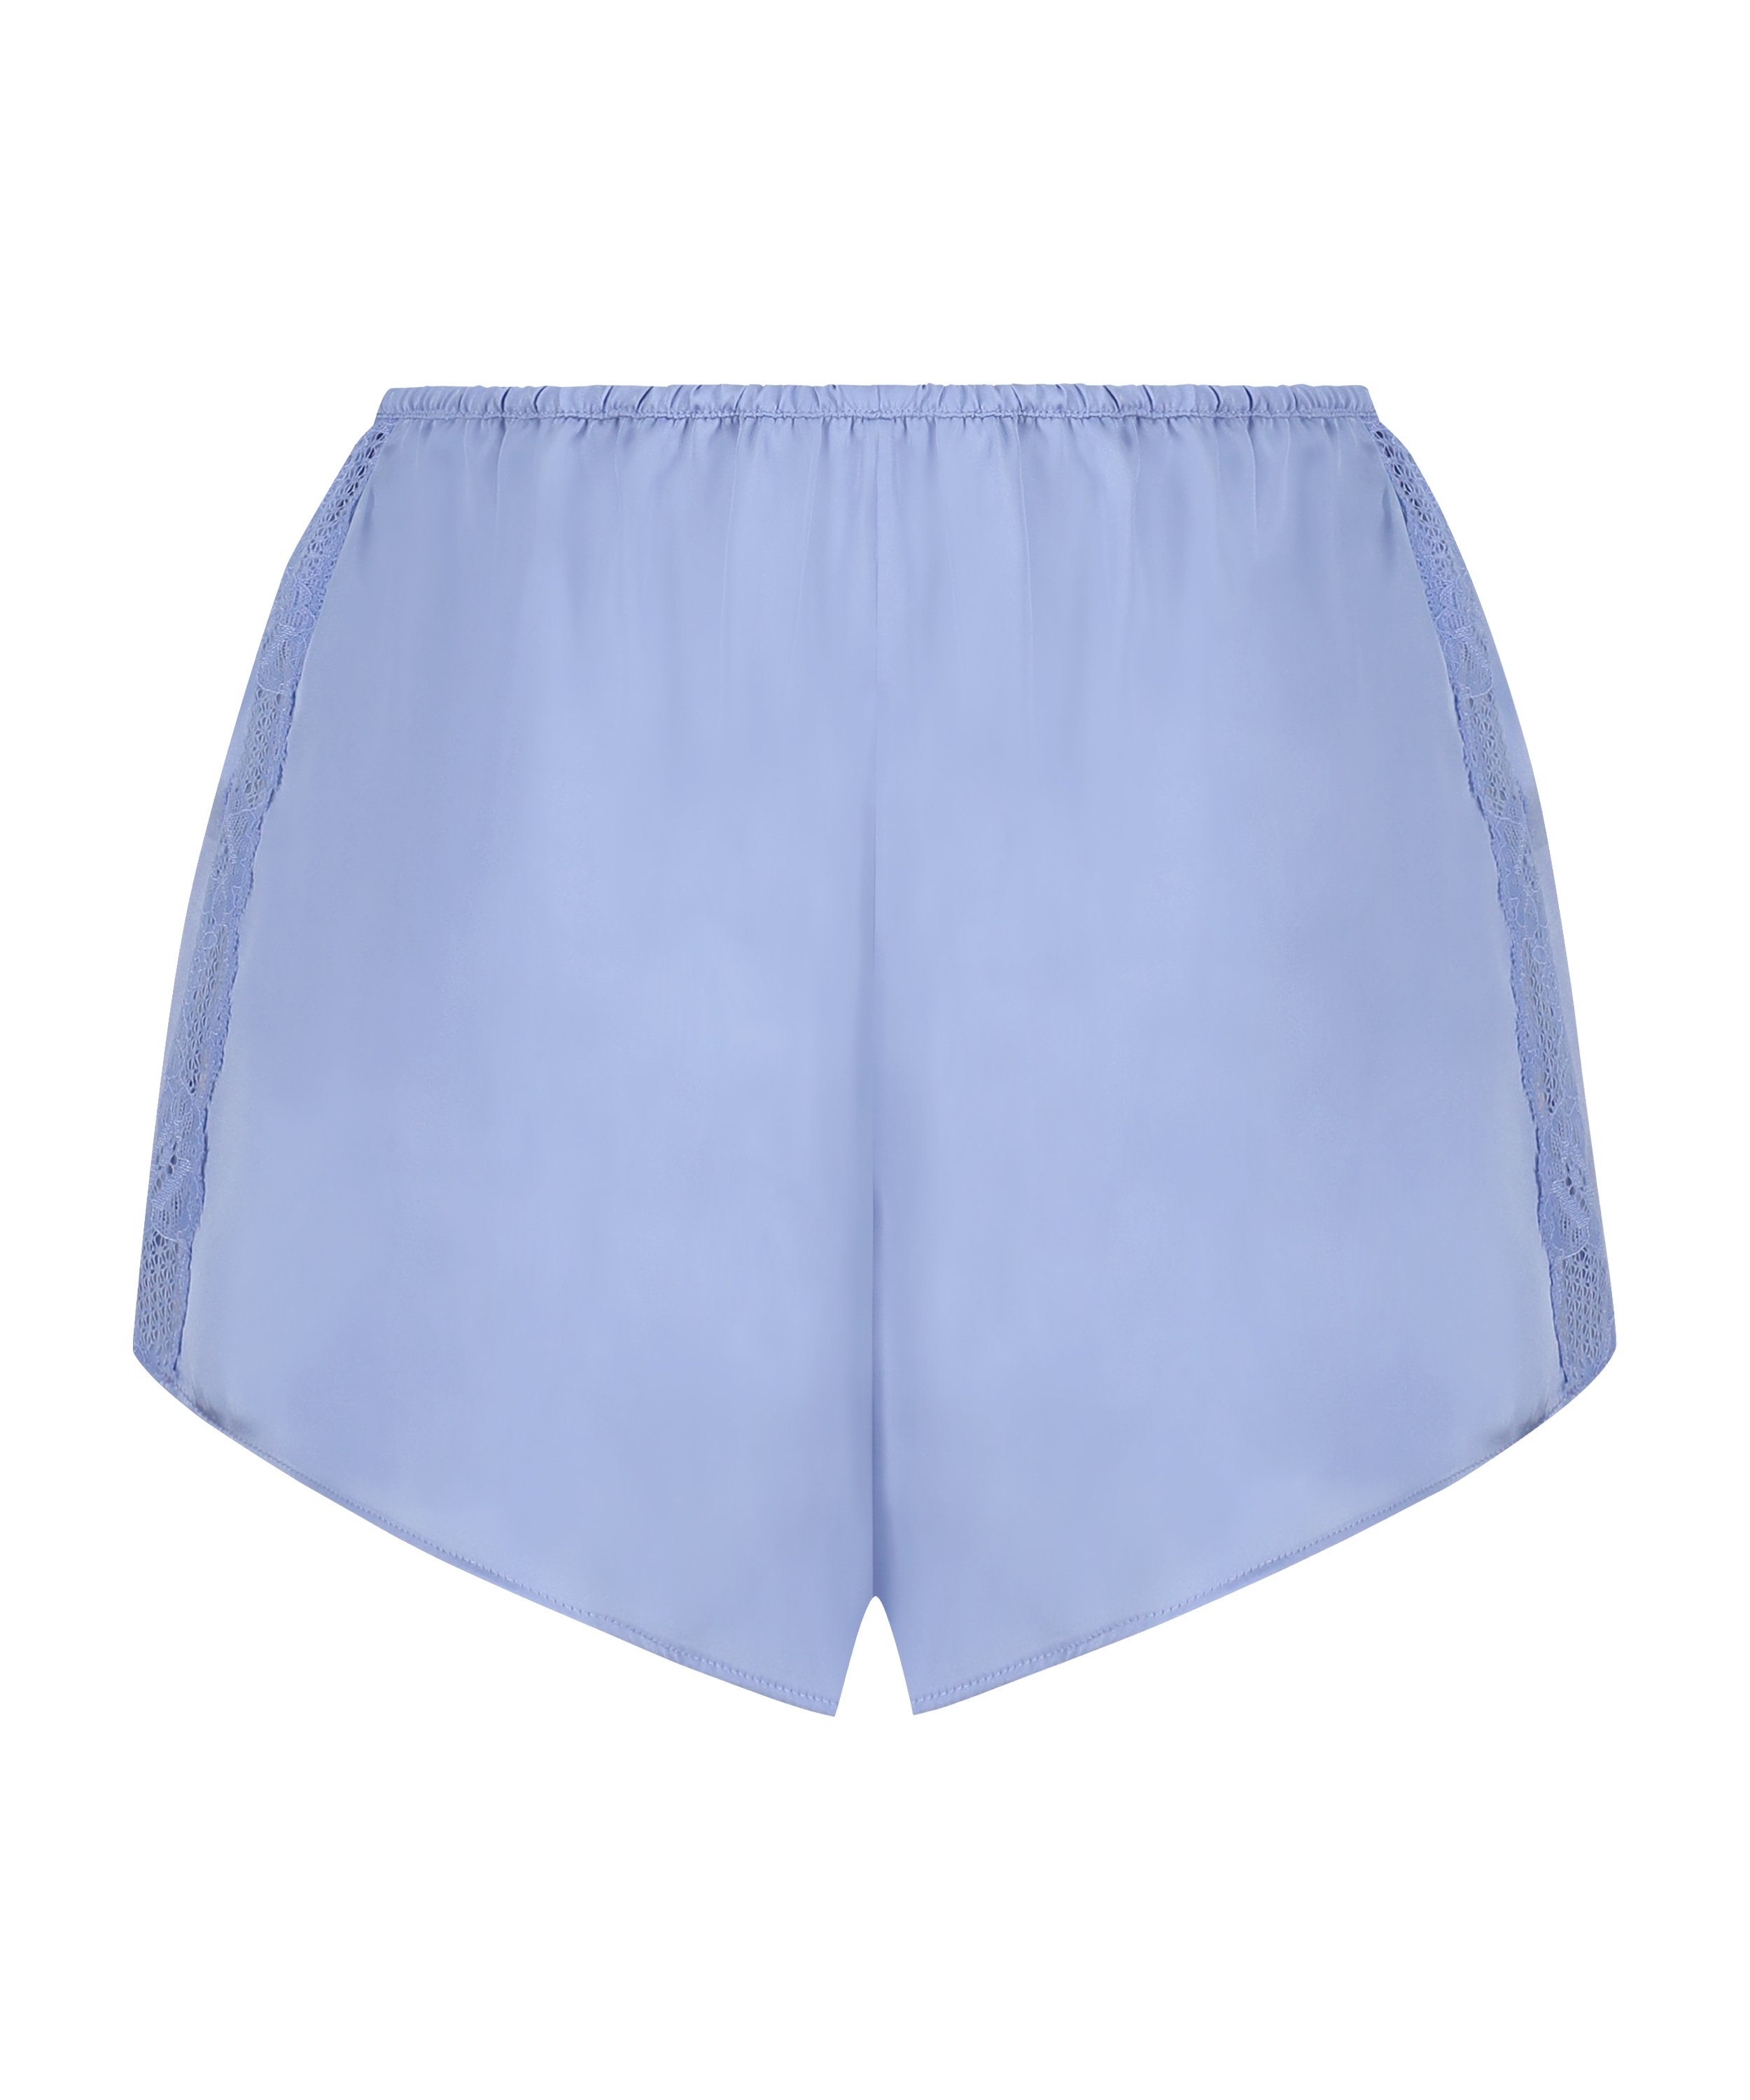 Pyjama-Shorts Satin Marcela, Blau, main